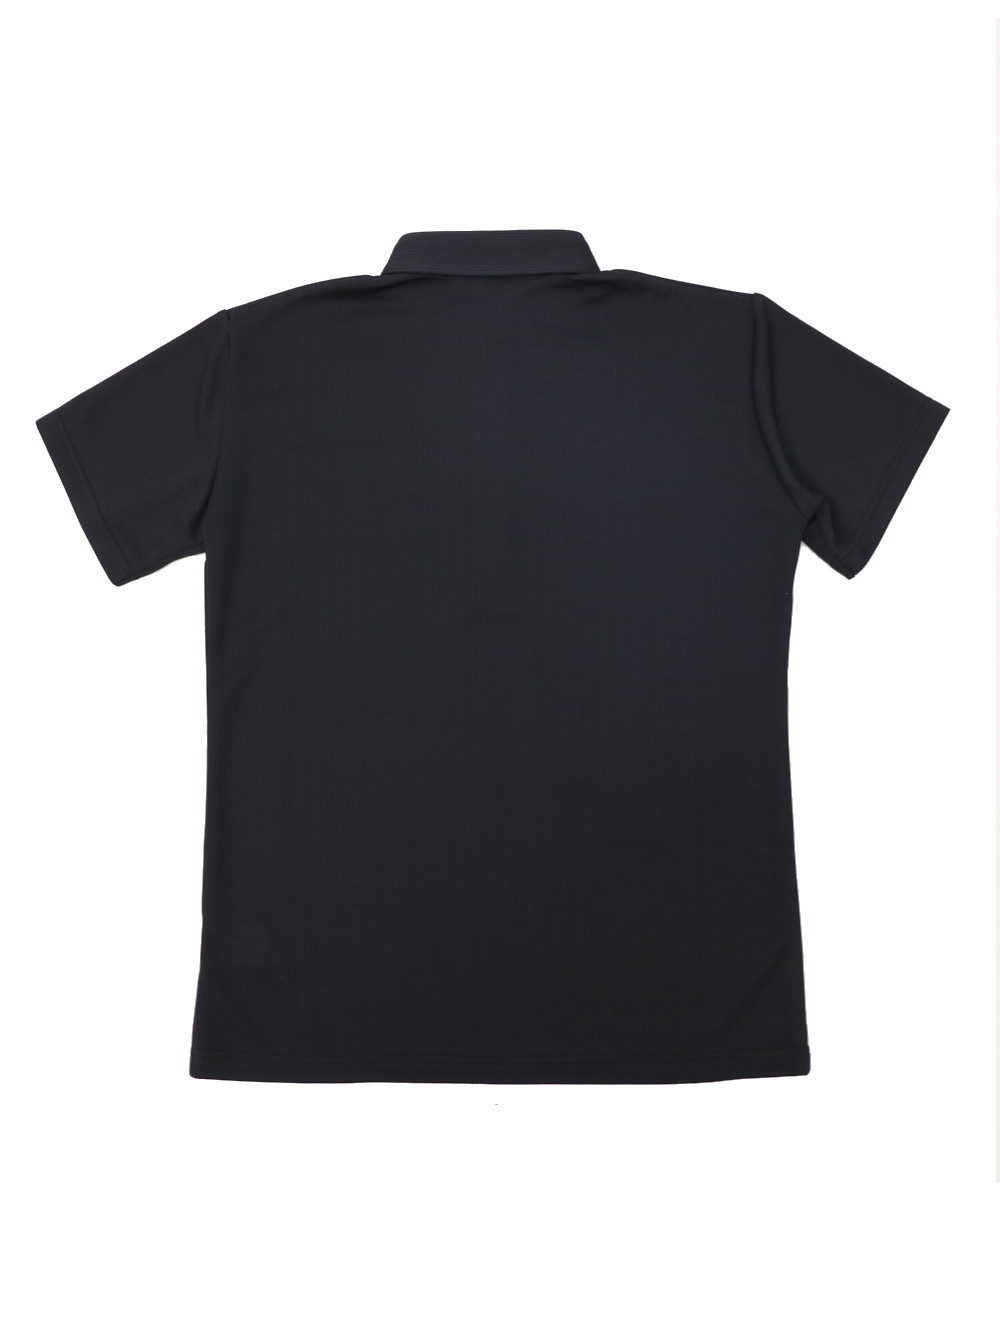 [レディース] 和柄ポロシャツ Lサイズ 黒画像